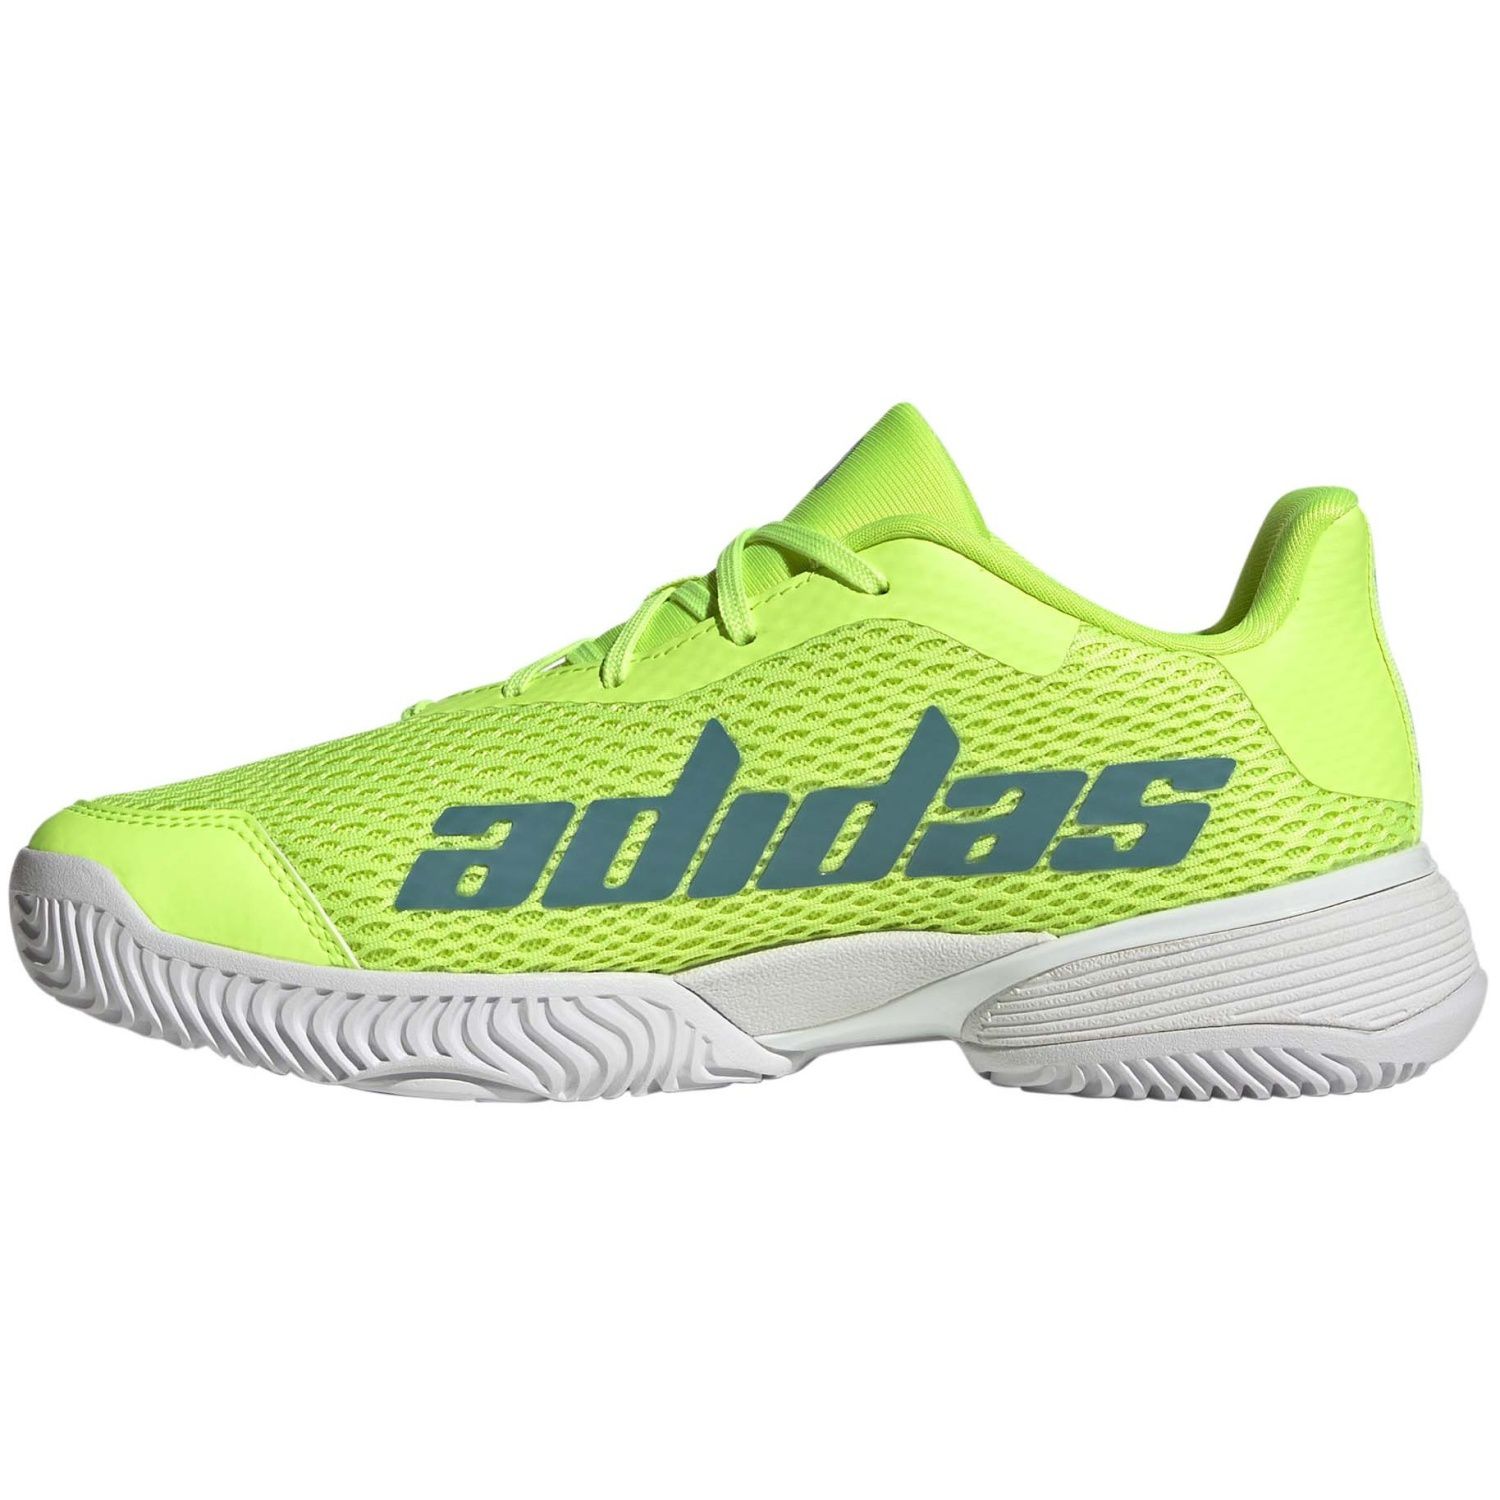 Sapatilhas adidas Barricade K - Sapatos ADIDAS Barricade Junior, conforto e desempenho otimizados para jovens jogadores de remo. | Sport Zone MKP